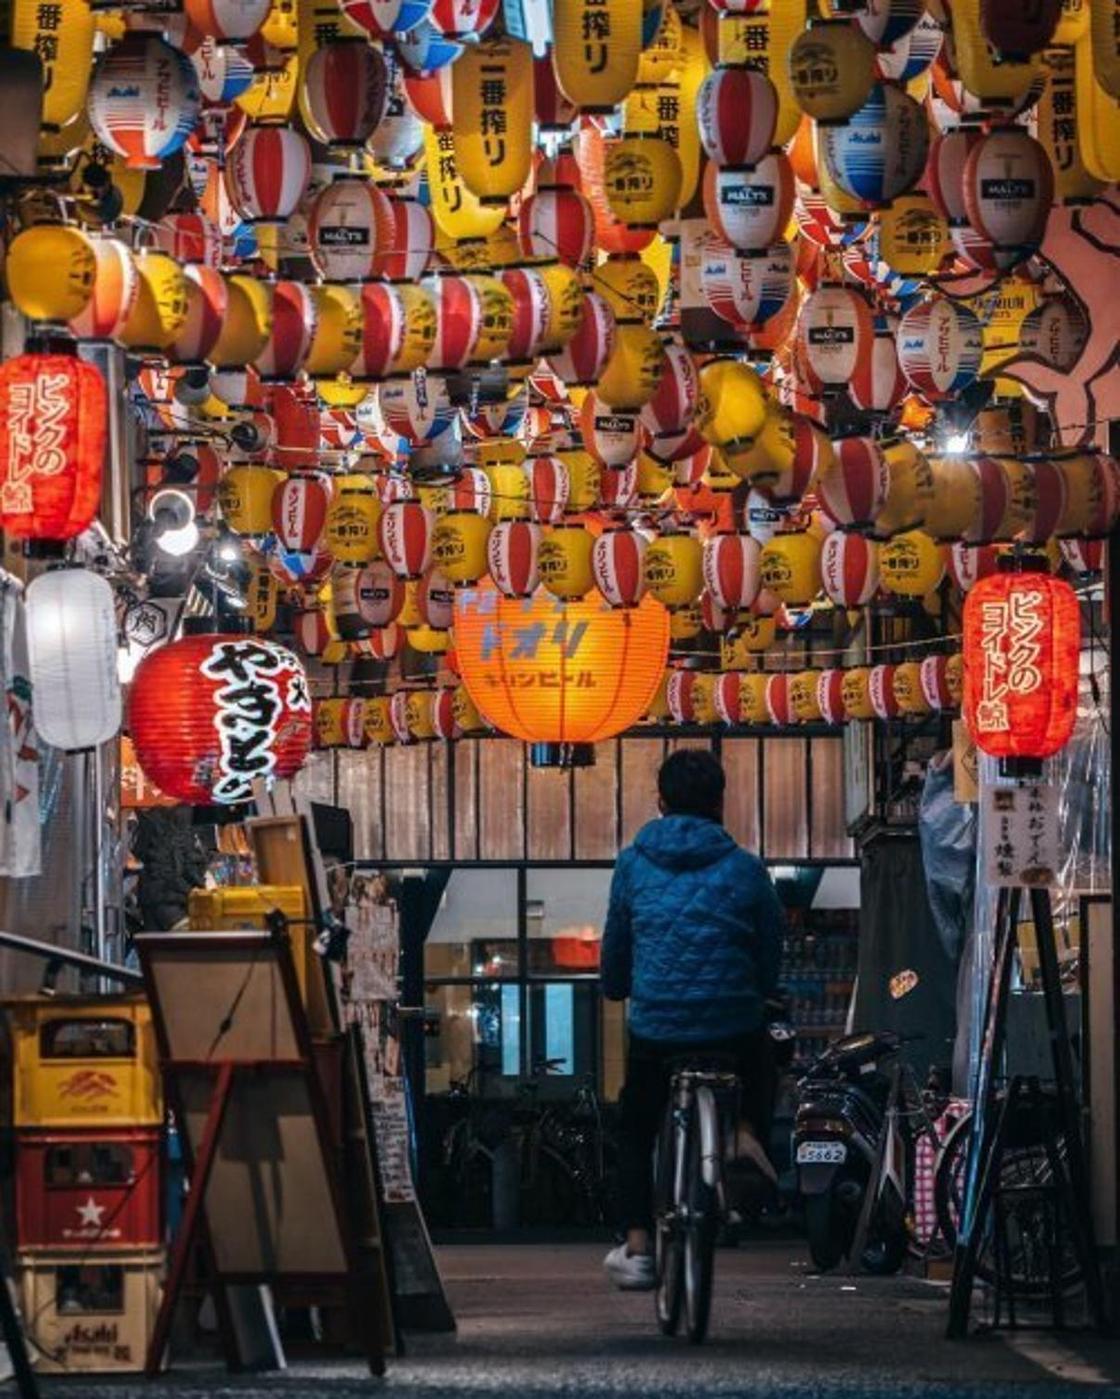 Уличный фотограф запечатлел уникальную красоту Восточной Азии